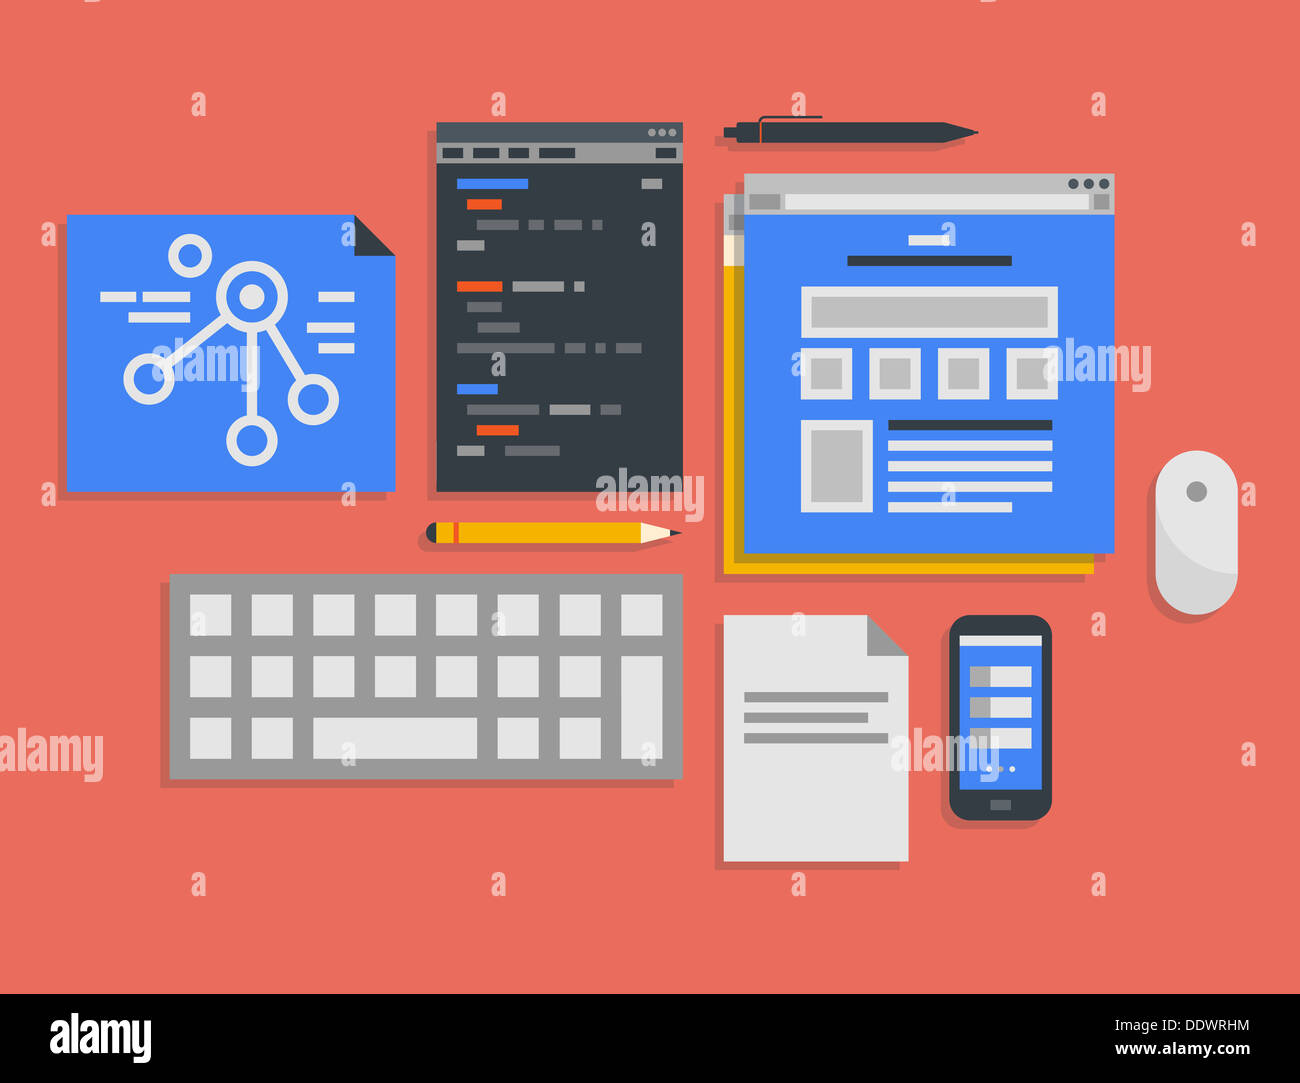 Modèle plat vector illustration icons set de bureau moderne pour la programmation web et de flux de processus de développement mobile Banque D'Images